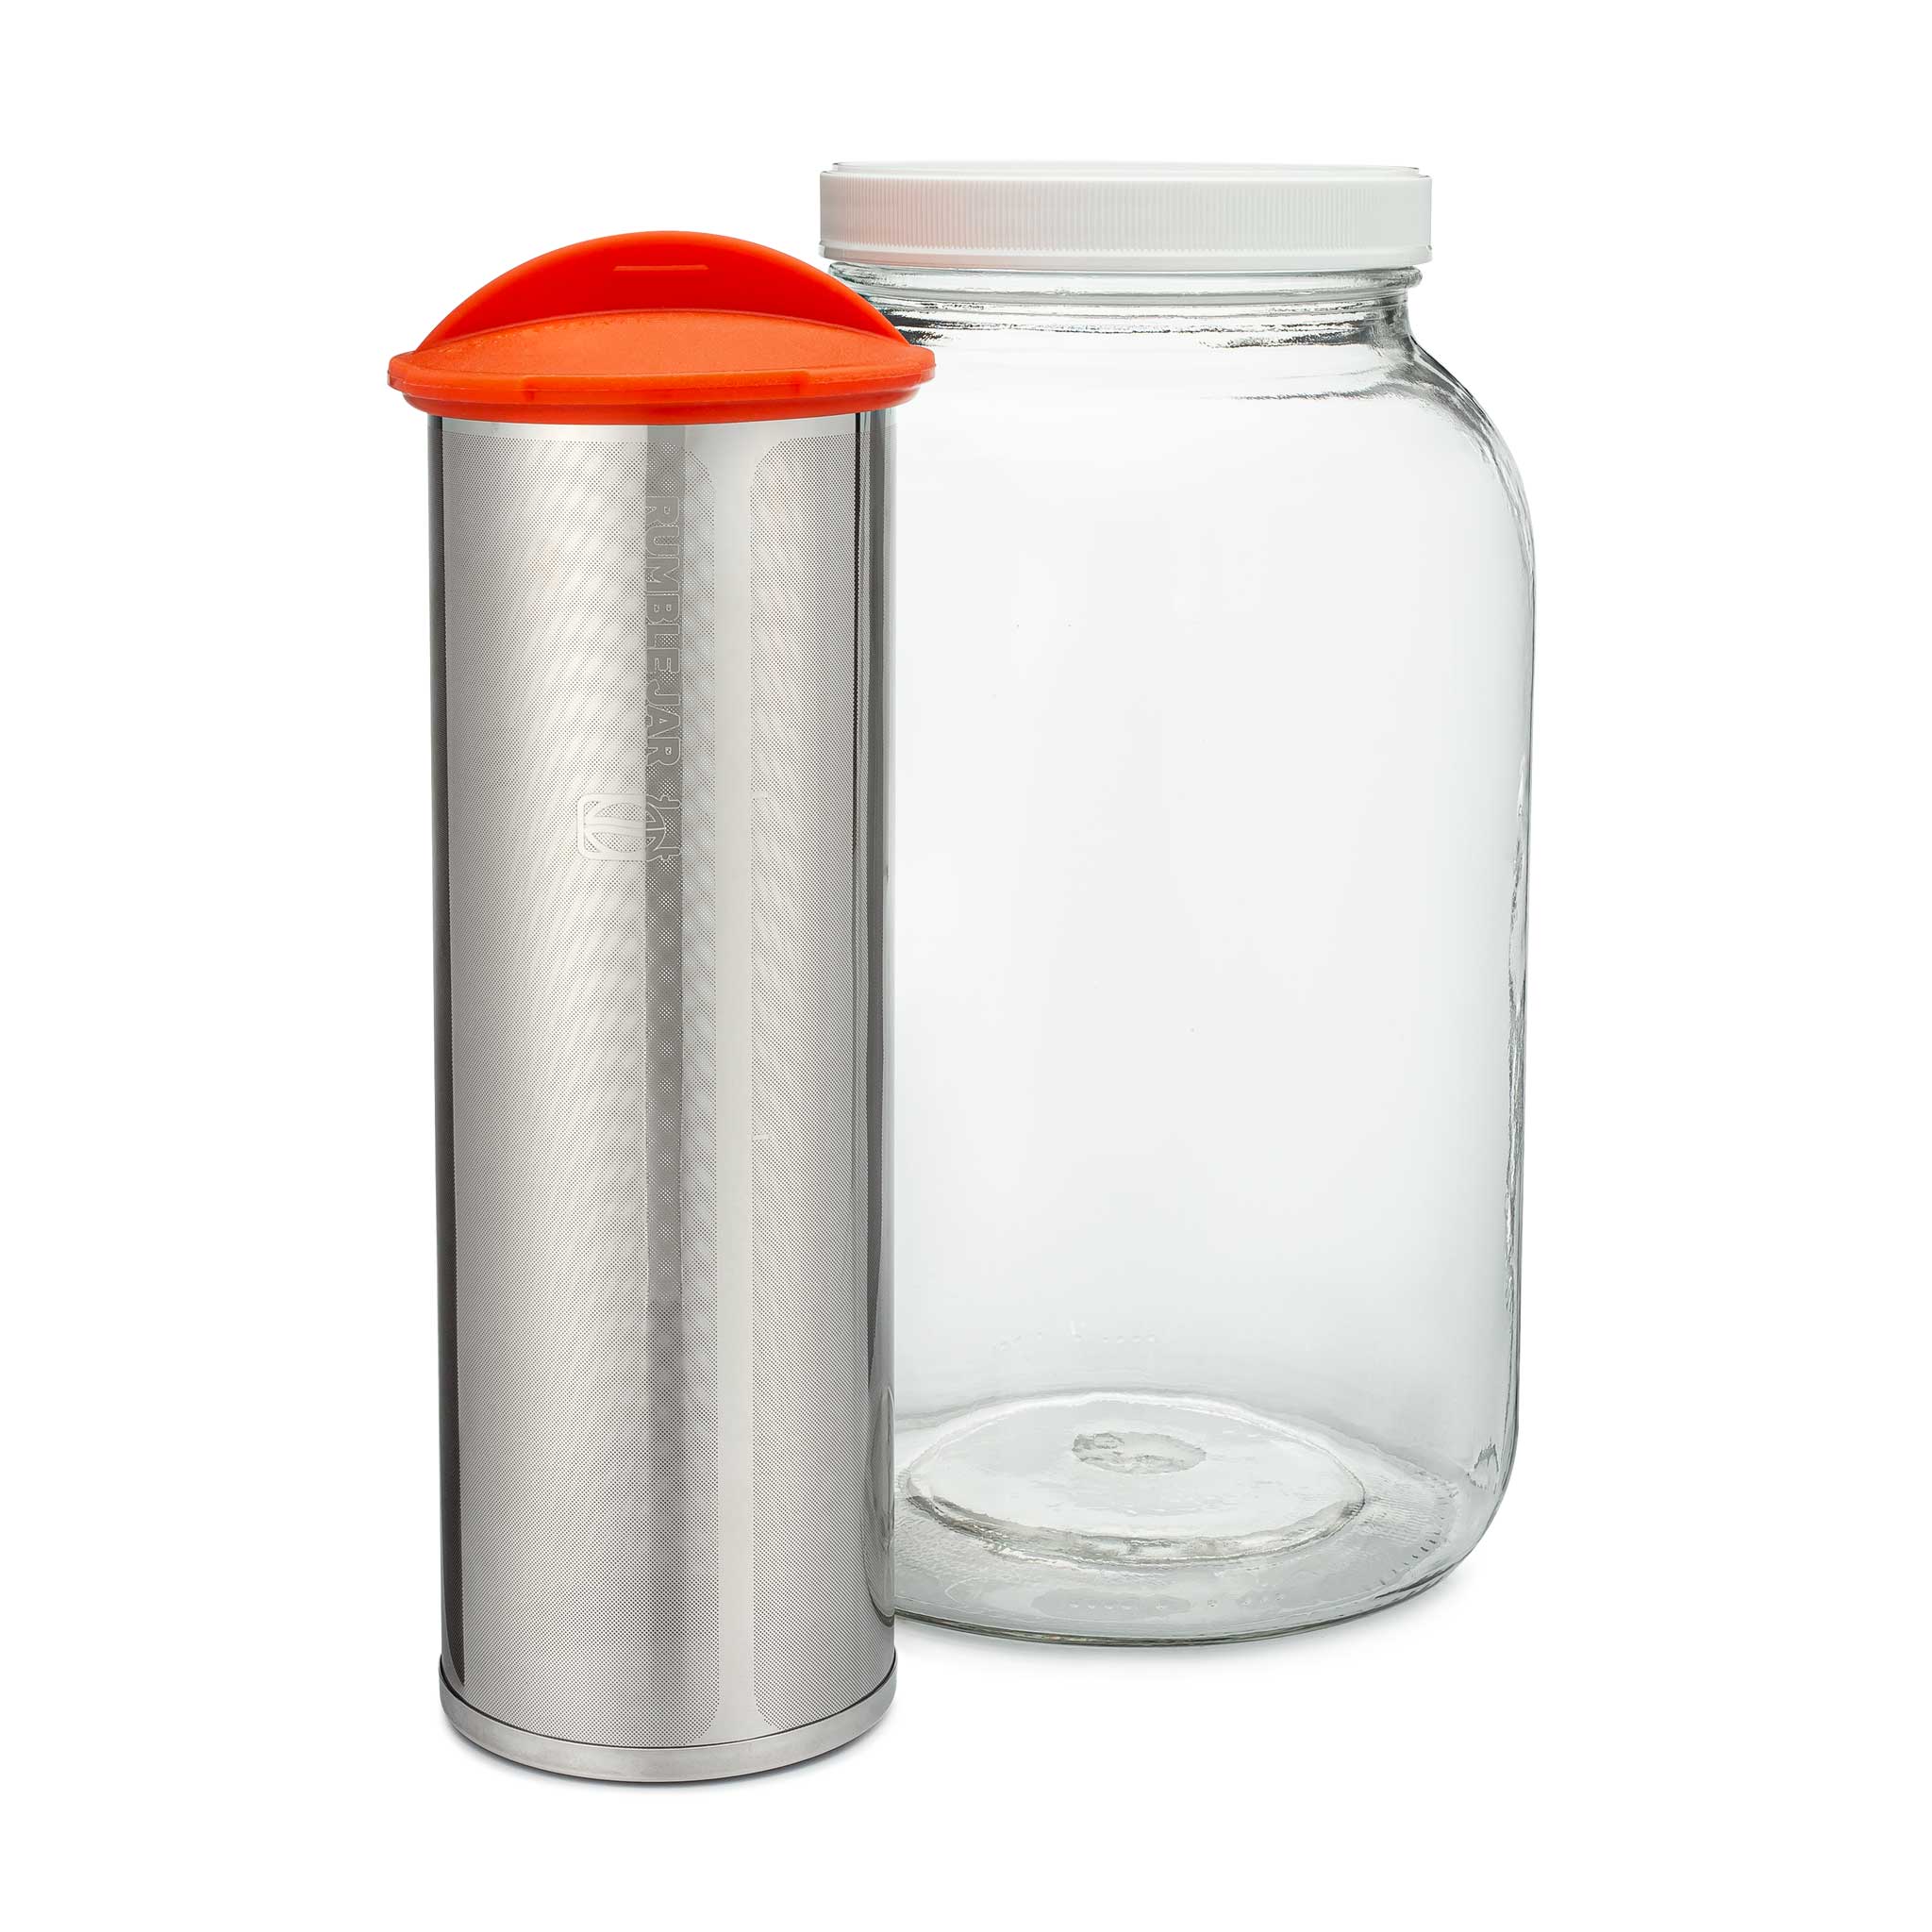 Rumble Jar XL 64oz Filter - Orange, Red